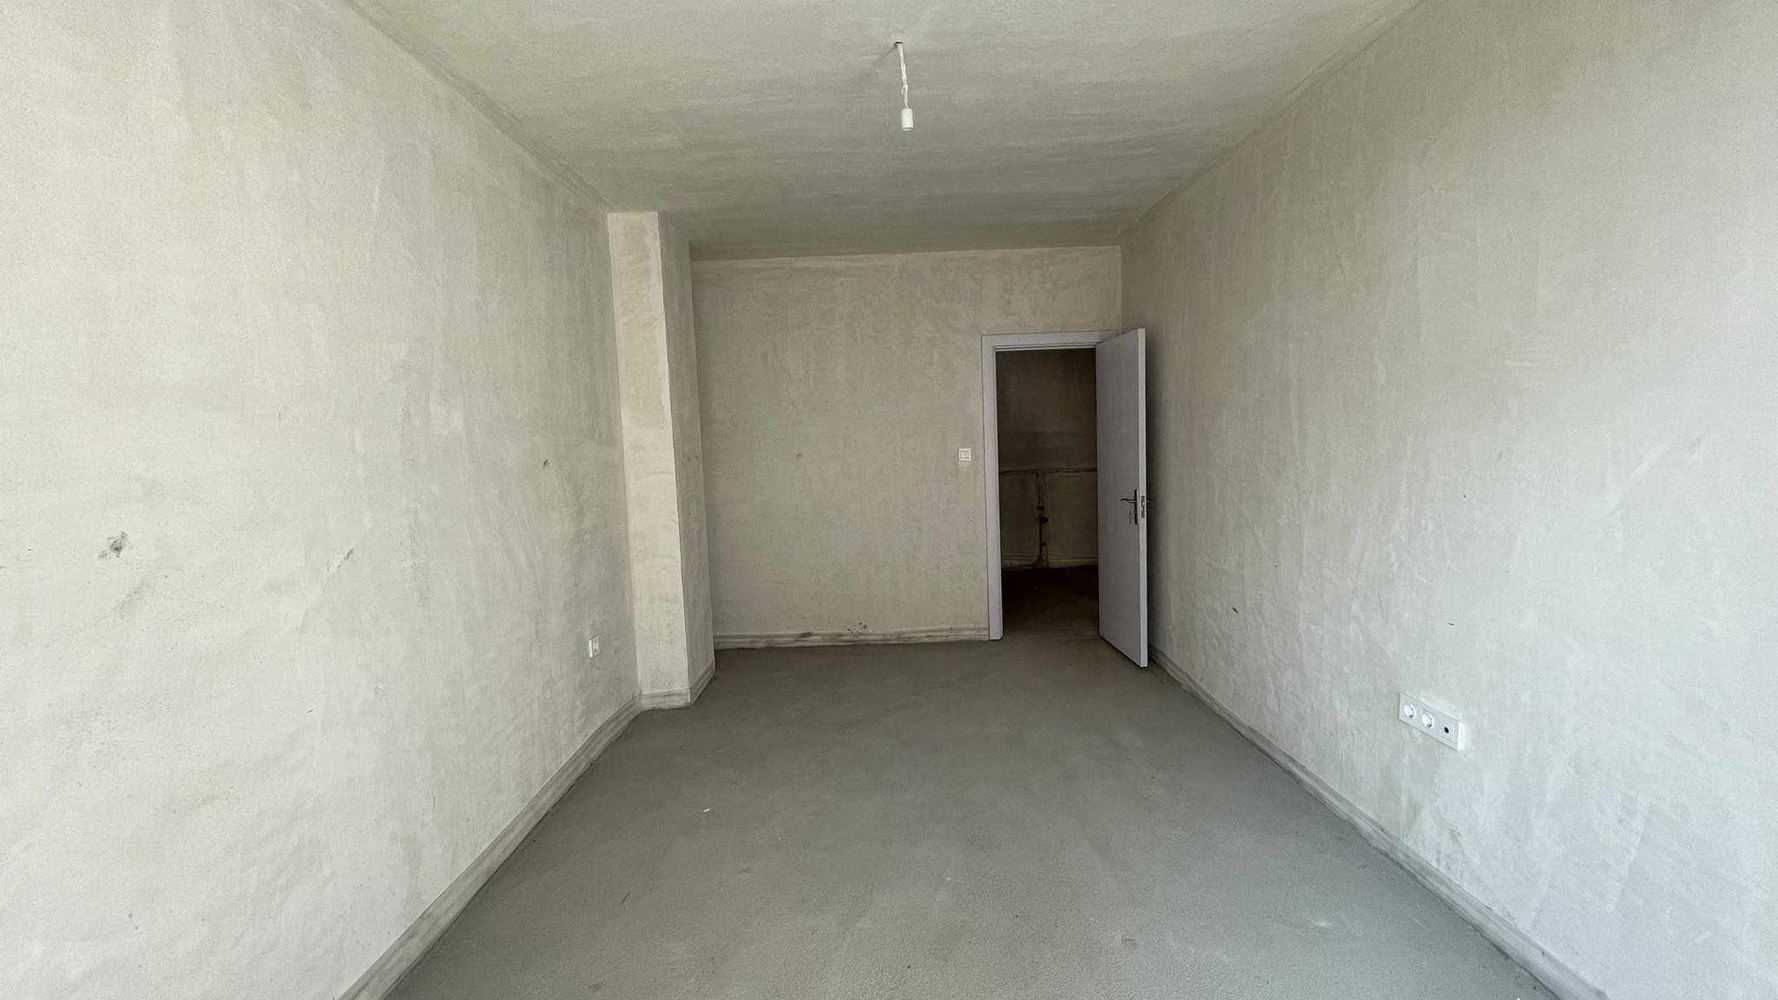 Тристаен апартамент с подземно паркомясто включено в цената Луксор 3